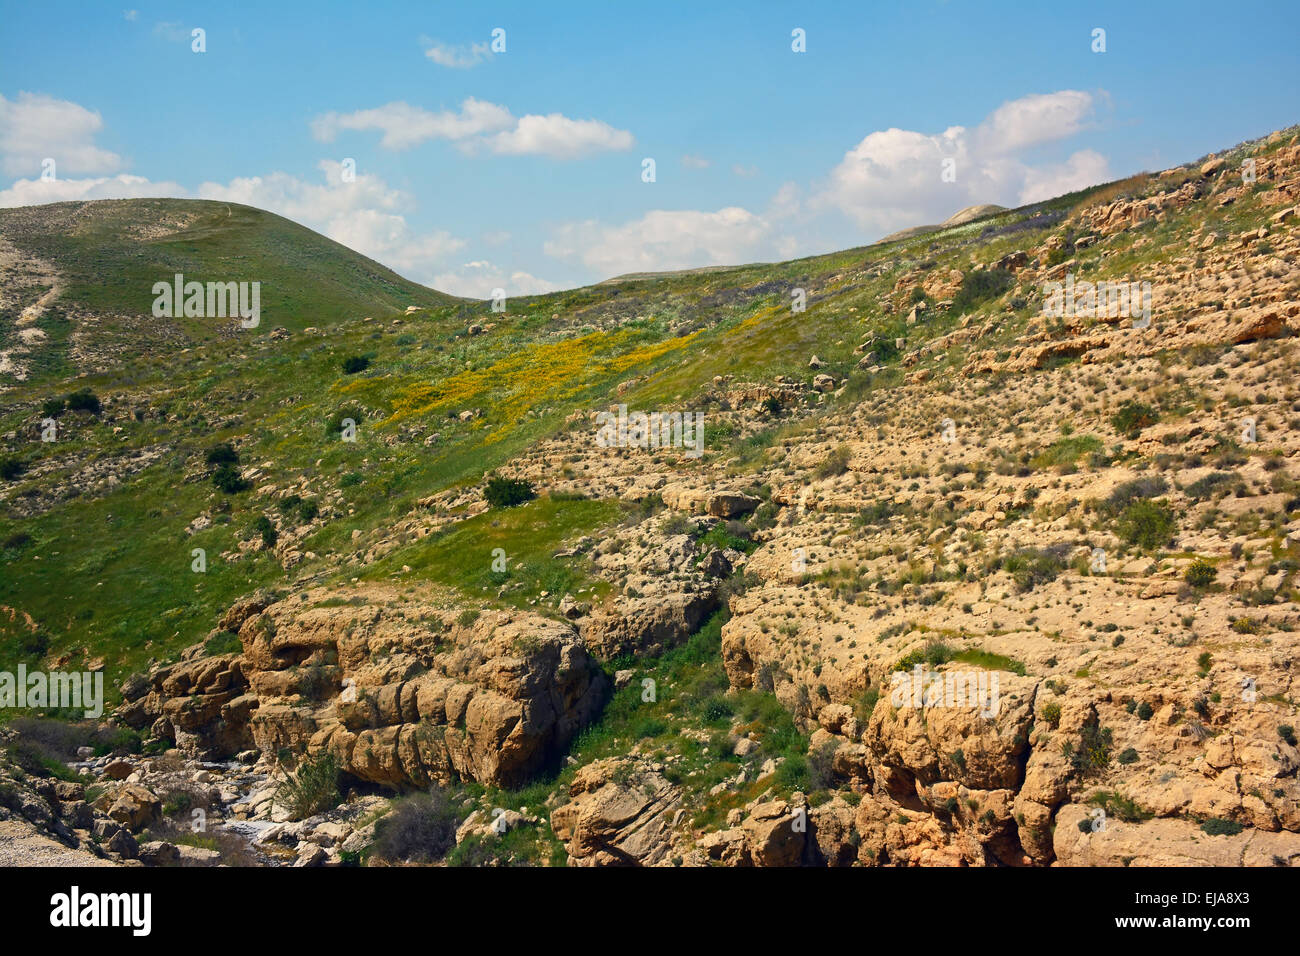 Judäische Wüste Ansicht während der Frühjahrssaison, Israel Stockfoto